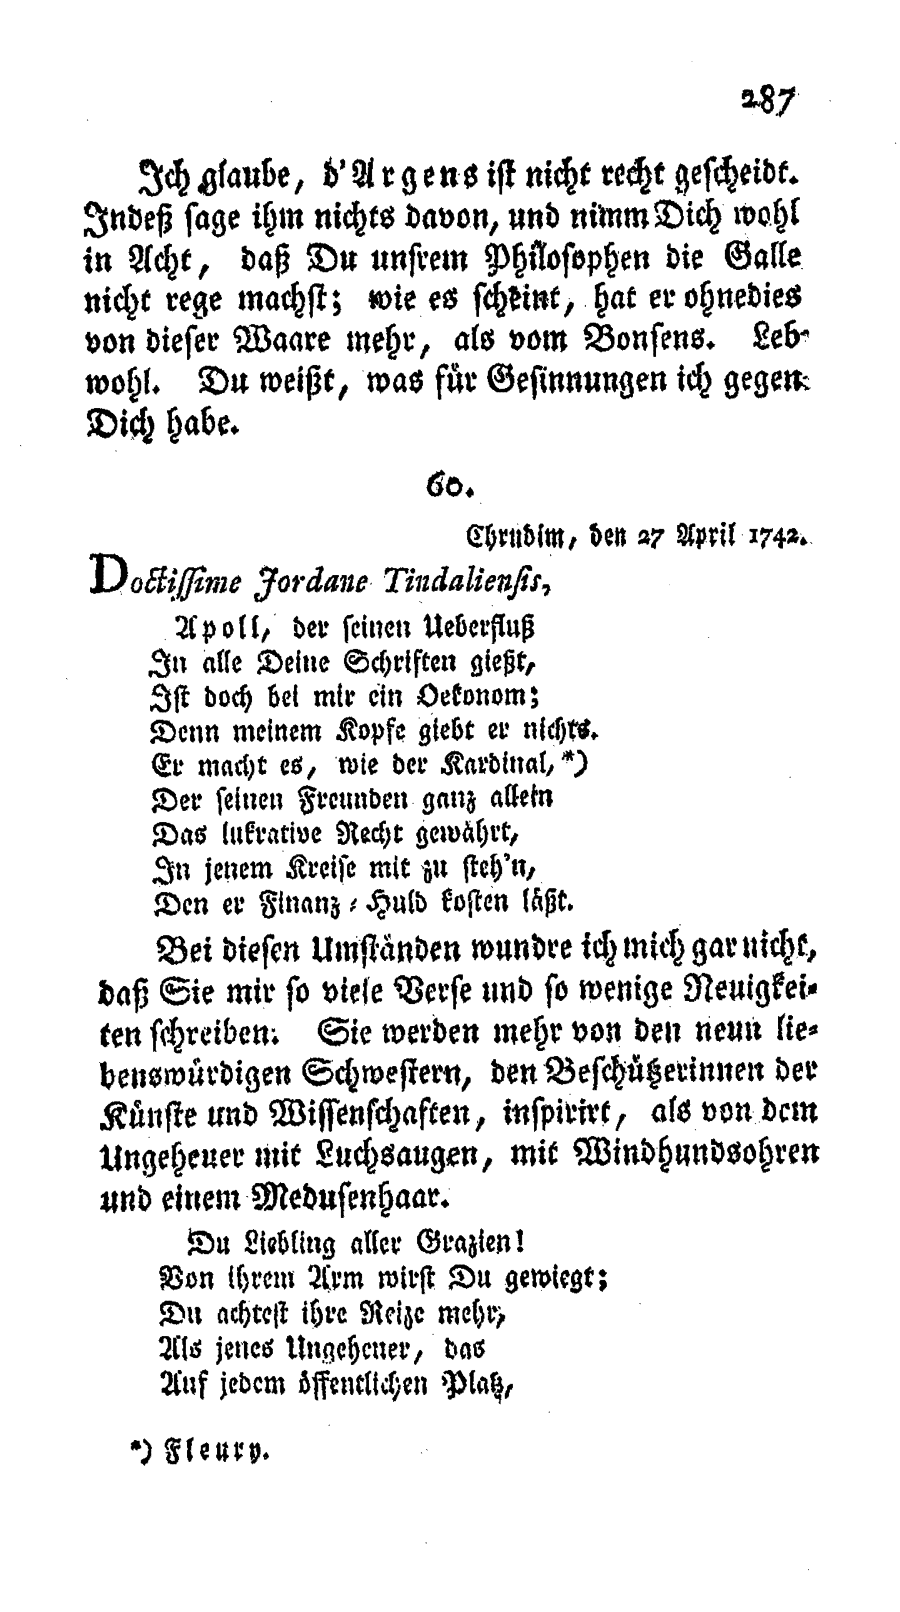 S. 287, Obj. 2